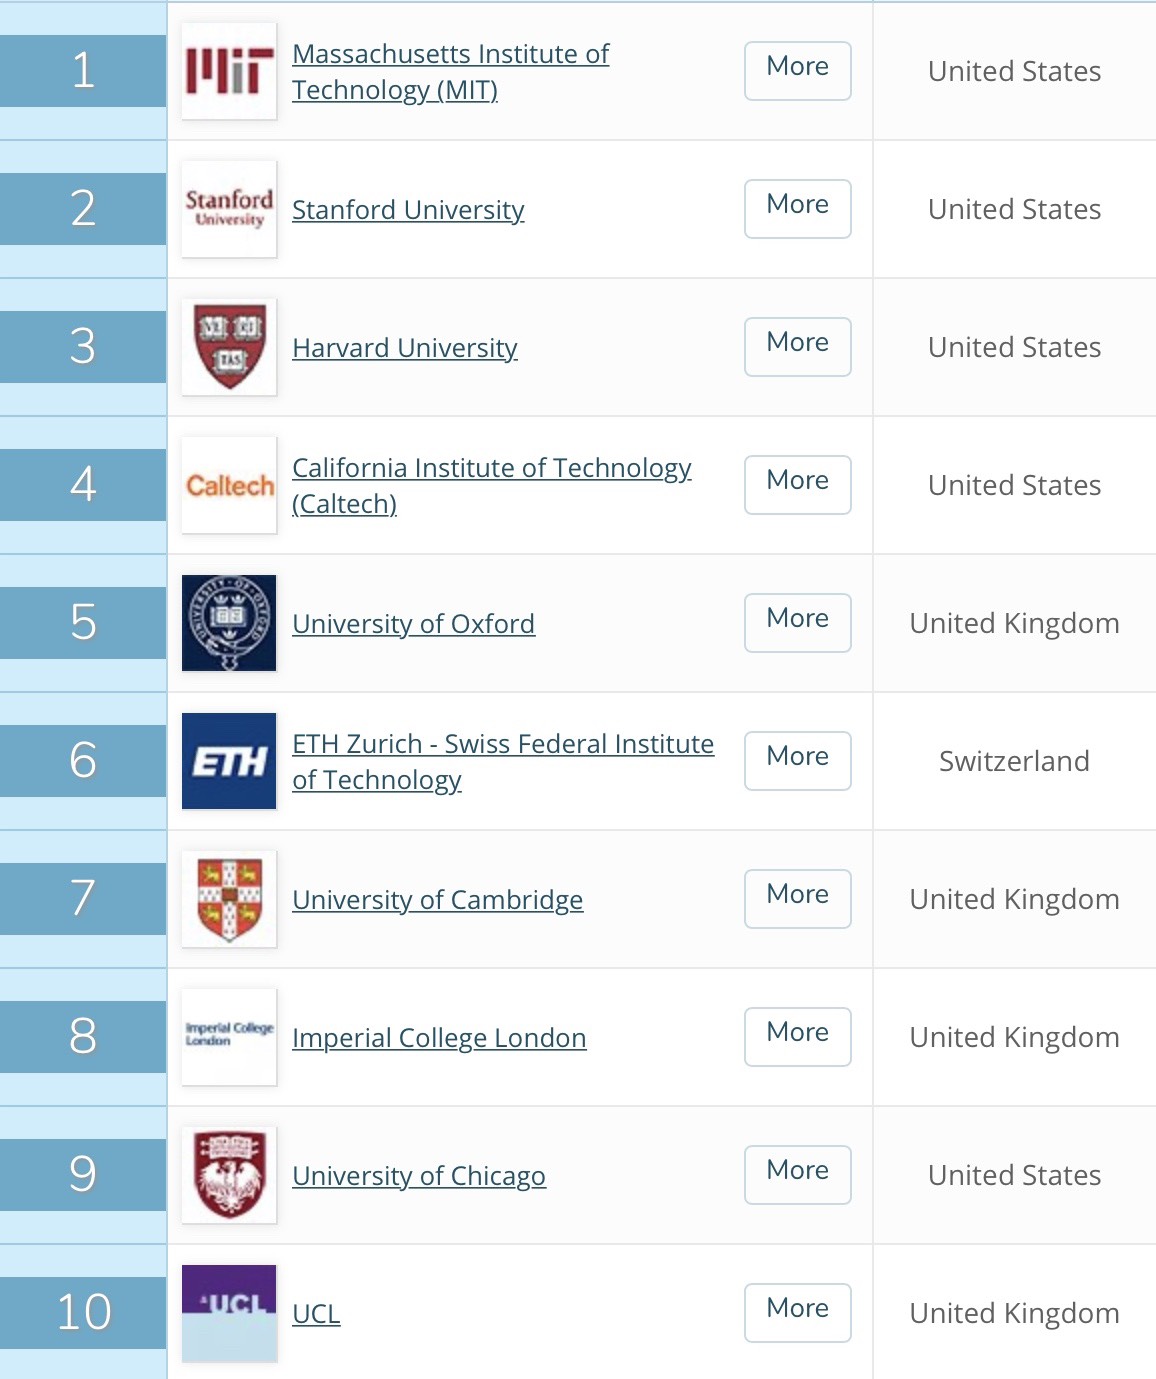 เปิดโผ Top10 อันดับมหาวิทยาลัยที่ดีที่สุดปี 2021 (ทั้งในไทยและระดับโลก)